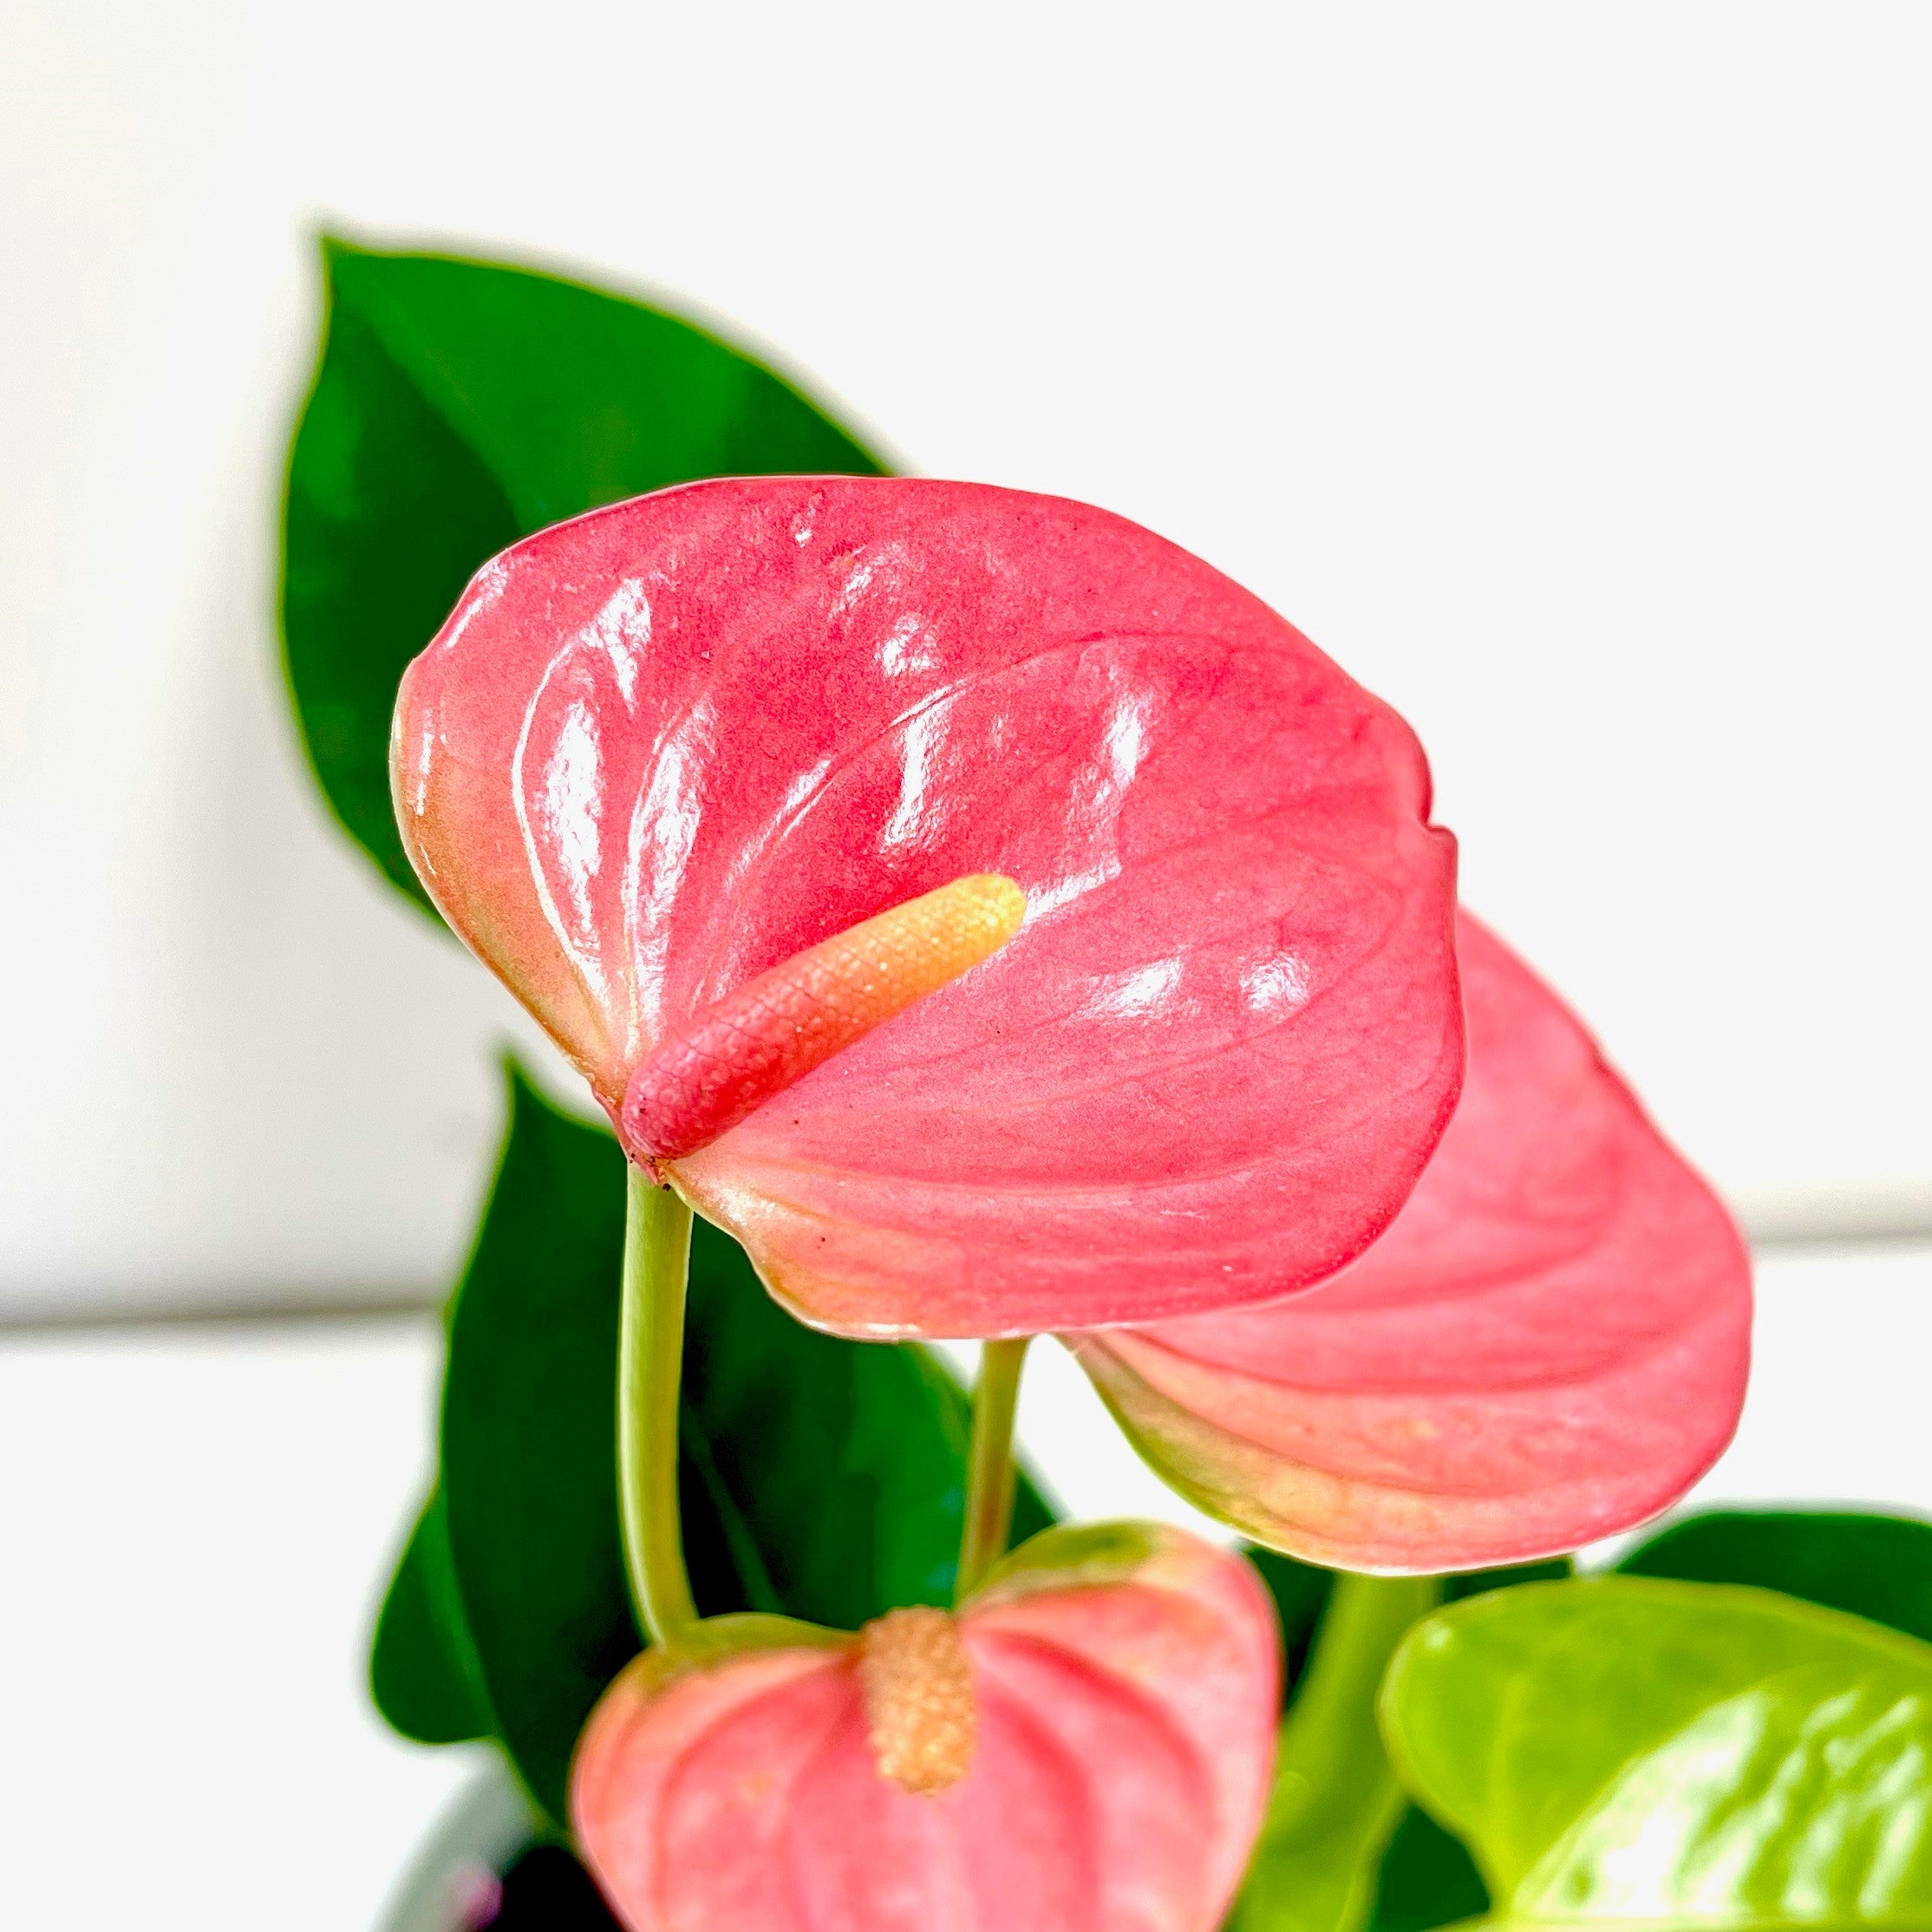 "Anthurium Royal Pink Champion - stunning pink blooms against lush green foliage - premium exotic plant - 